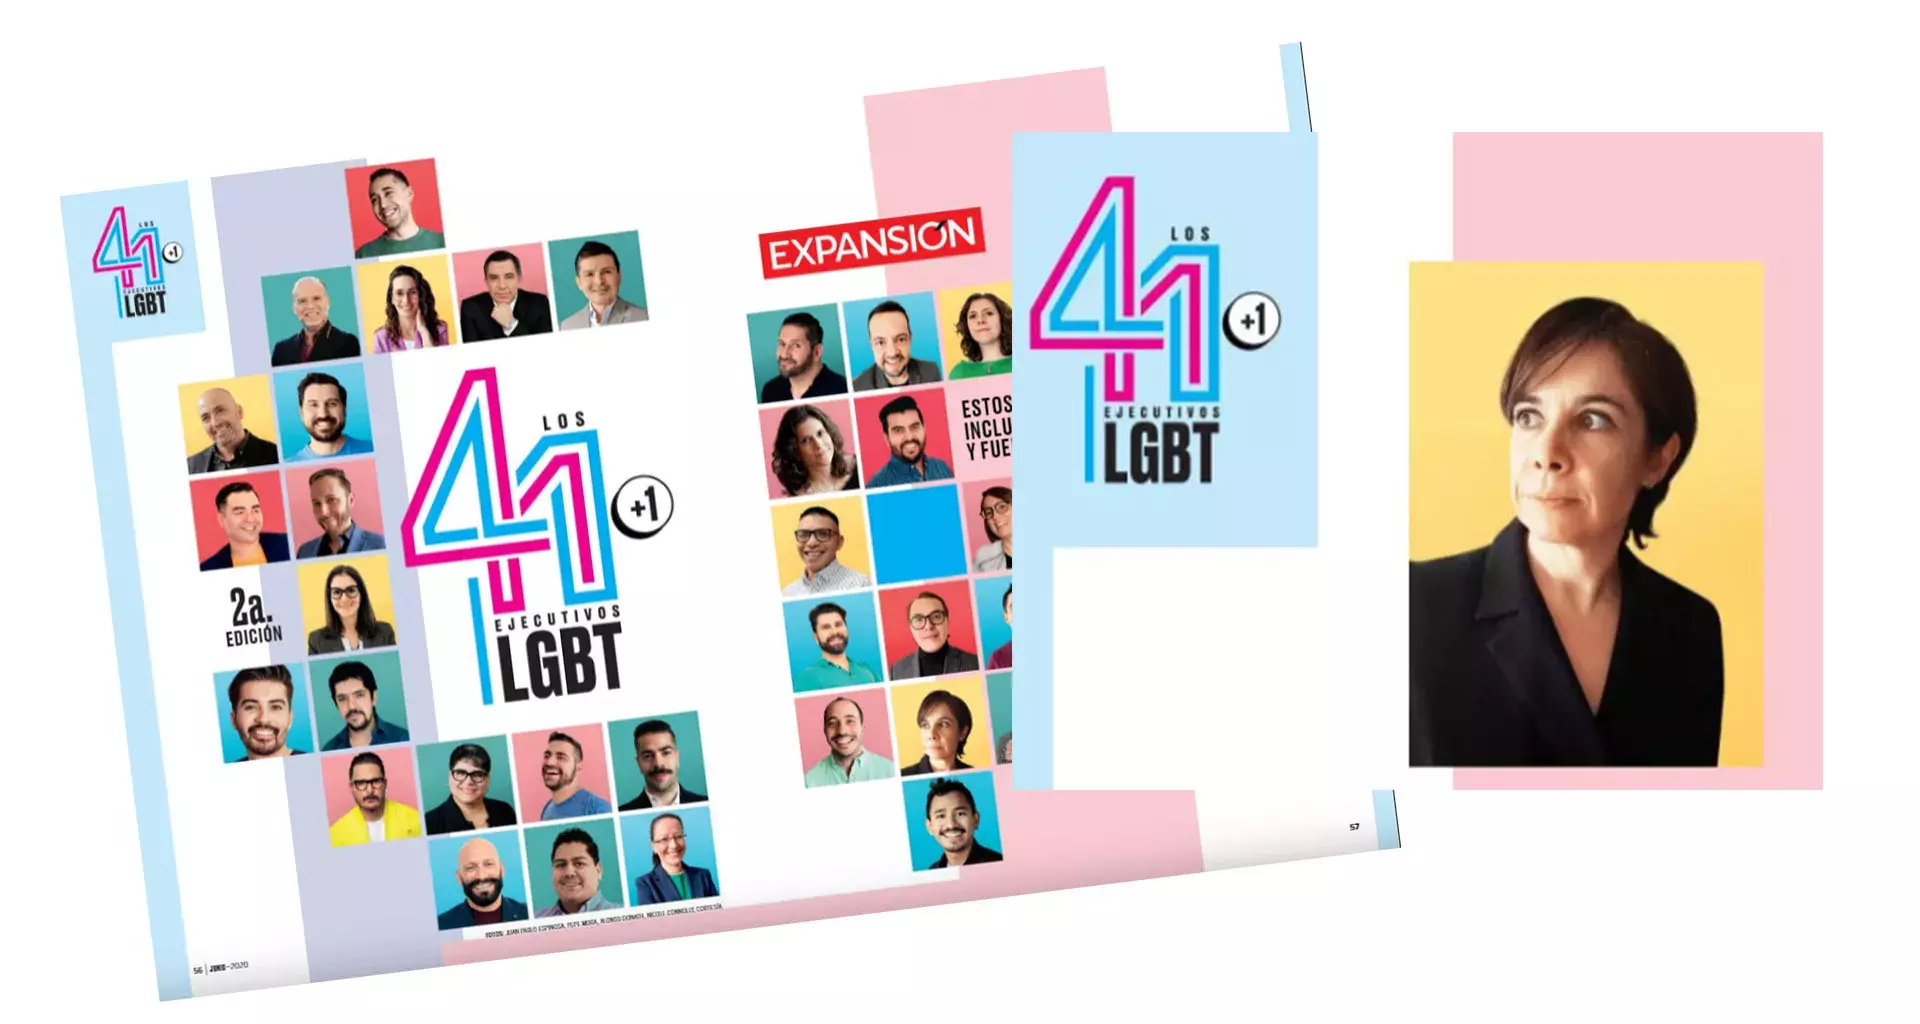 Ana Cárdenas, del Tec campus Toluca, en la lista de Ejecutivos LGBT de Expansión